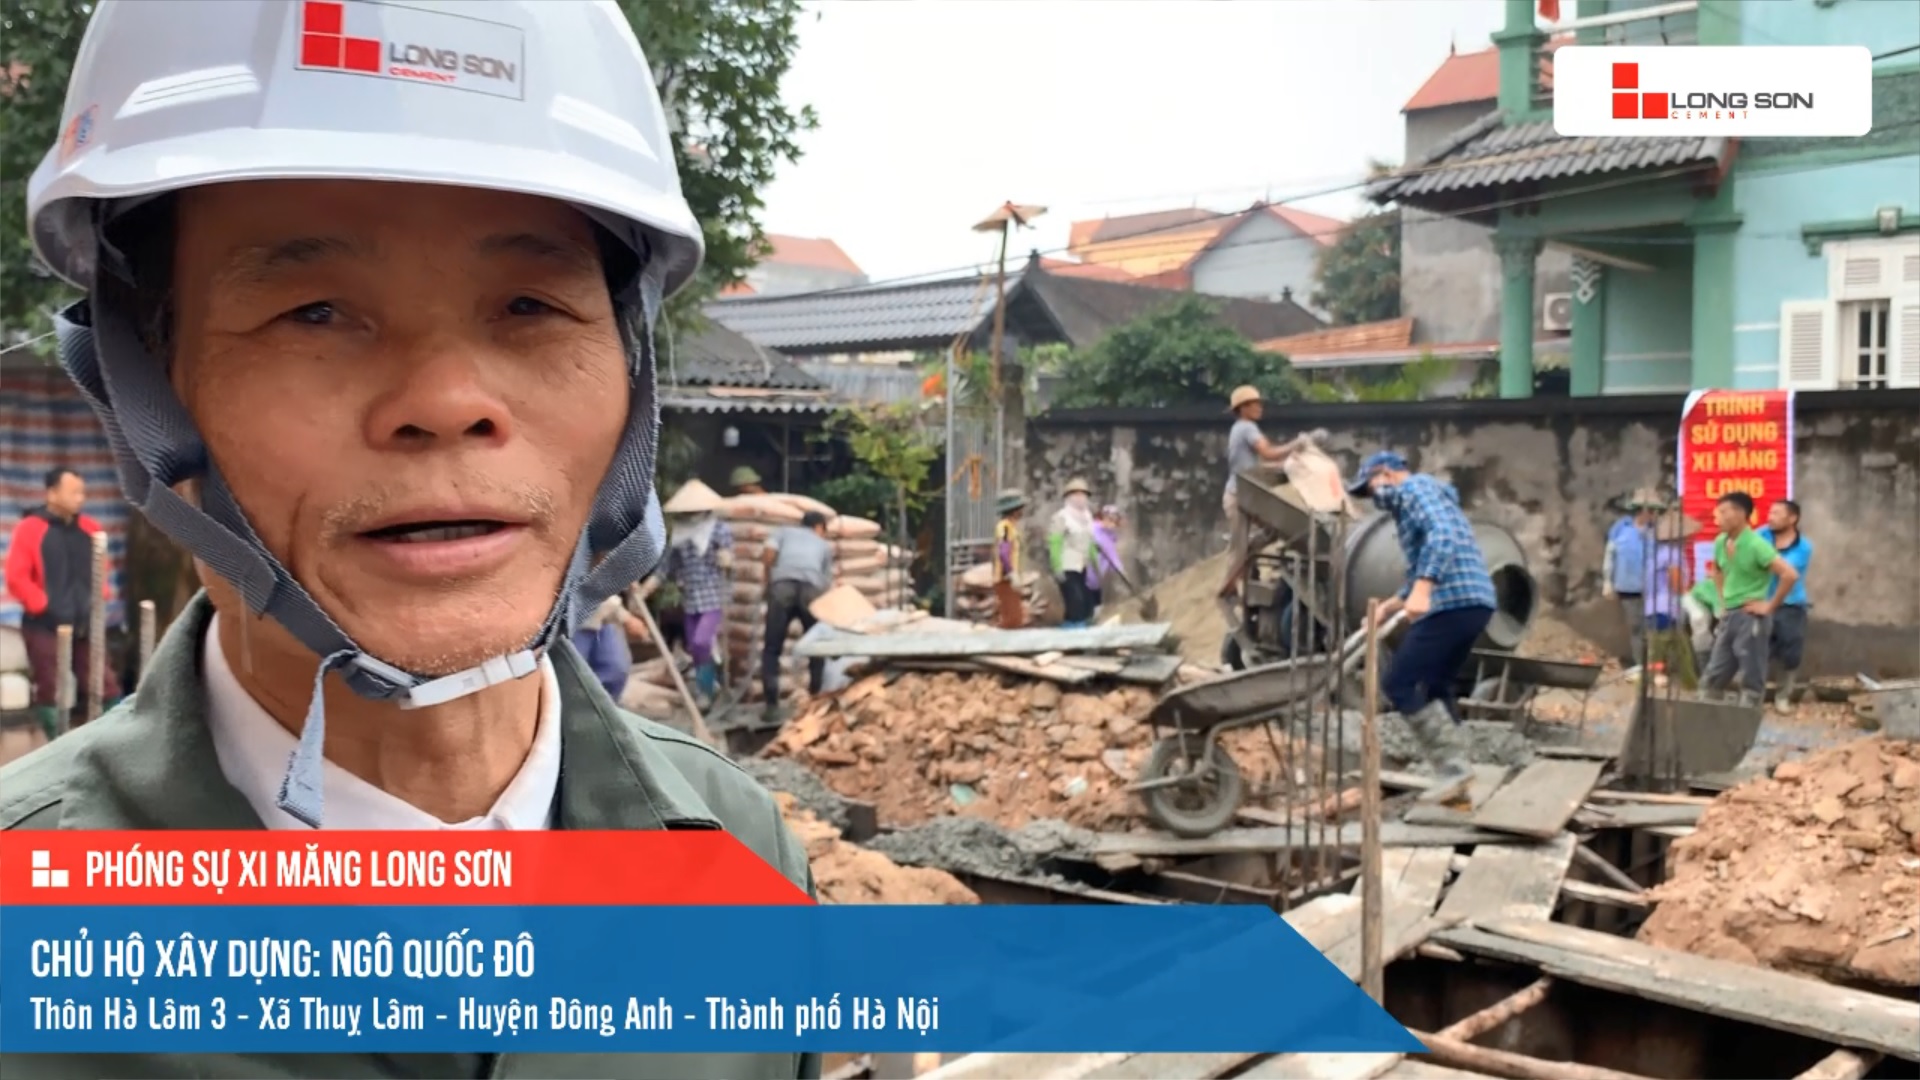 Phóng sự công trình sử dụng Xi măng Long Sơn tại Hà Nội 05.03.2021